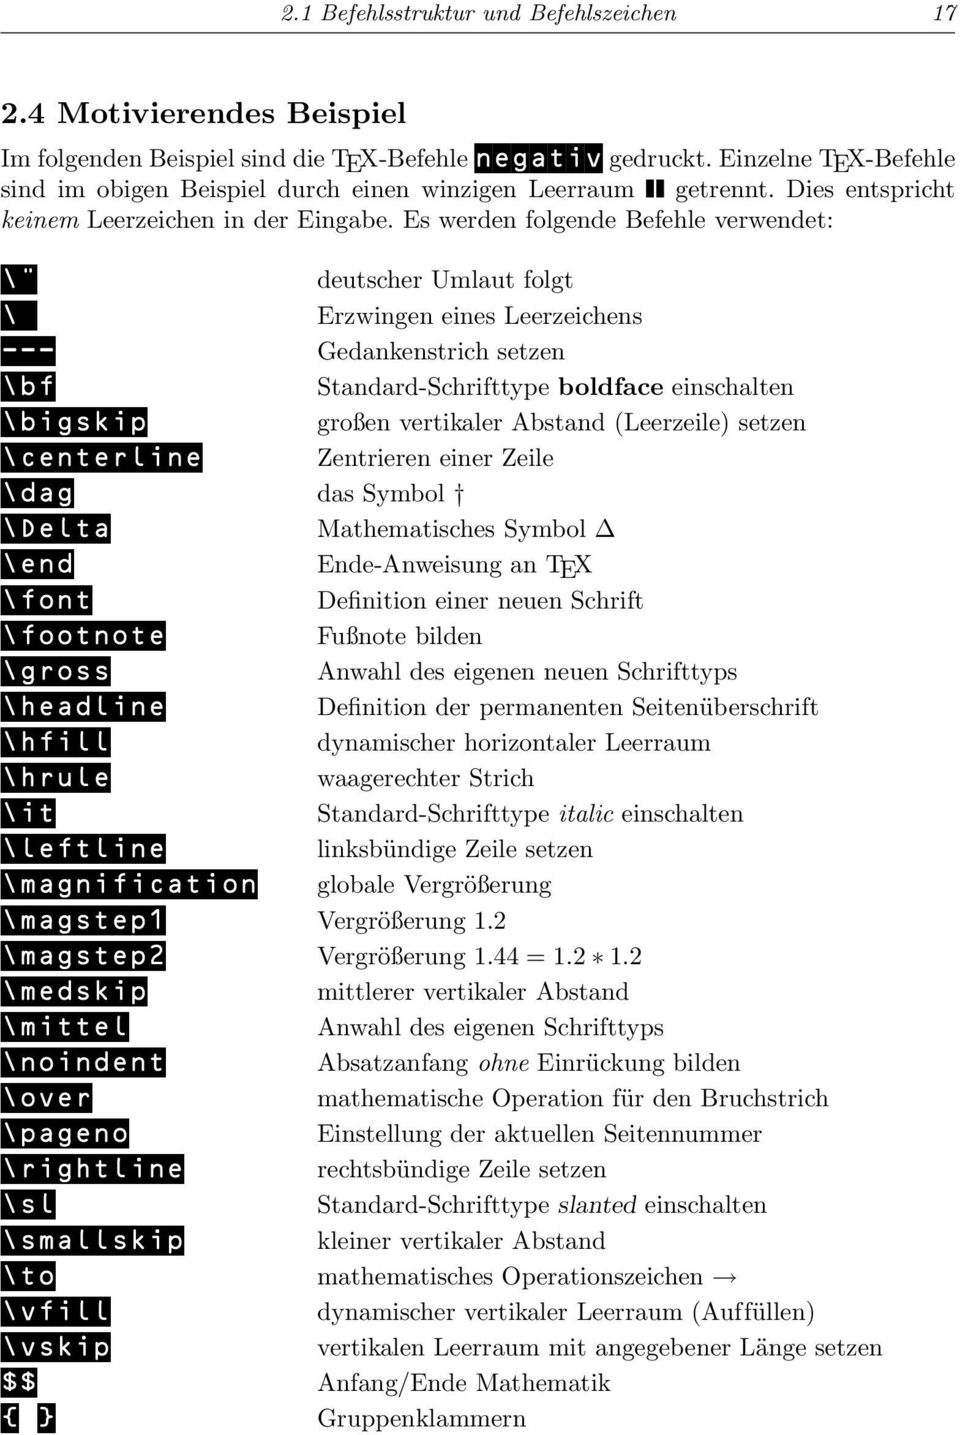 Es werden folgende Befehle verwendet: \" deutscher Umlaut folgt \ Erzwingen eines Leerzeichens --- Gedankenstrich setzen \bf Standard-Schrifttype boldface einschalten \bigskip großen vertikaler